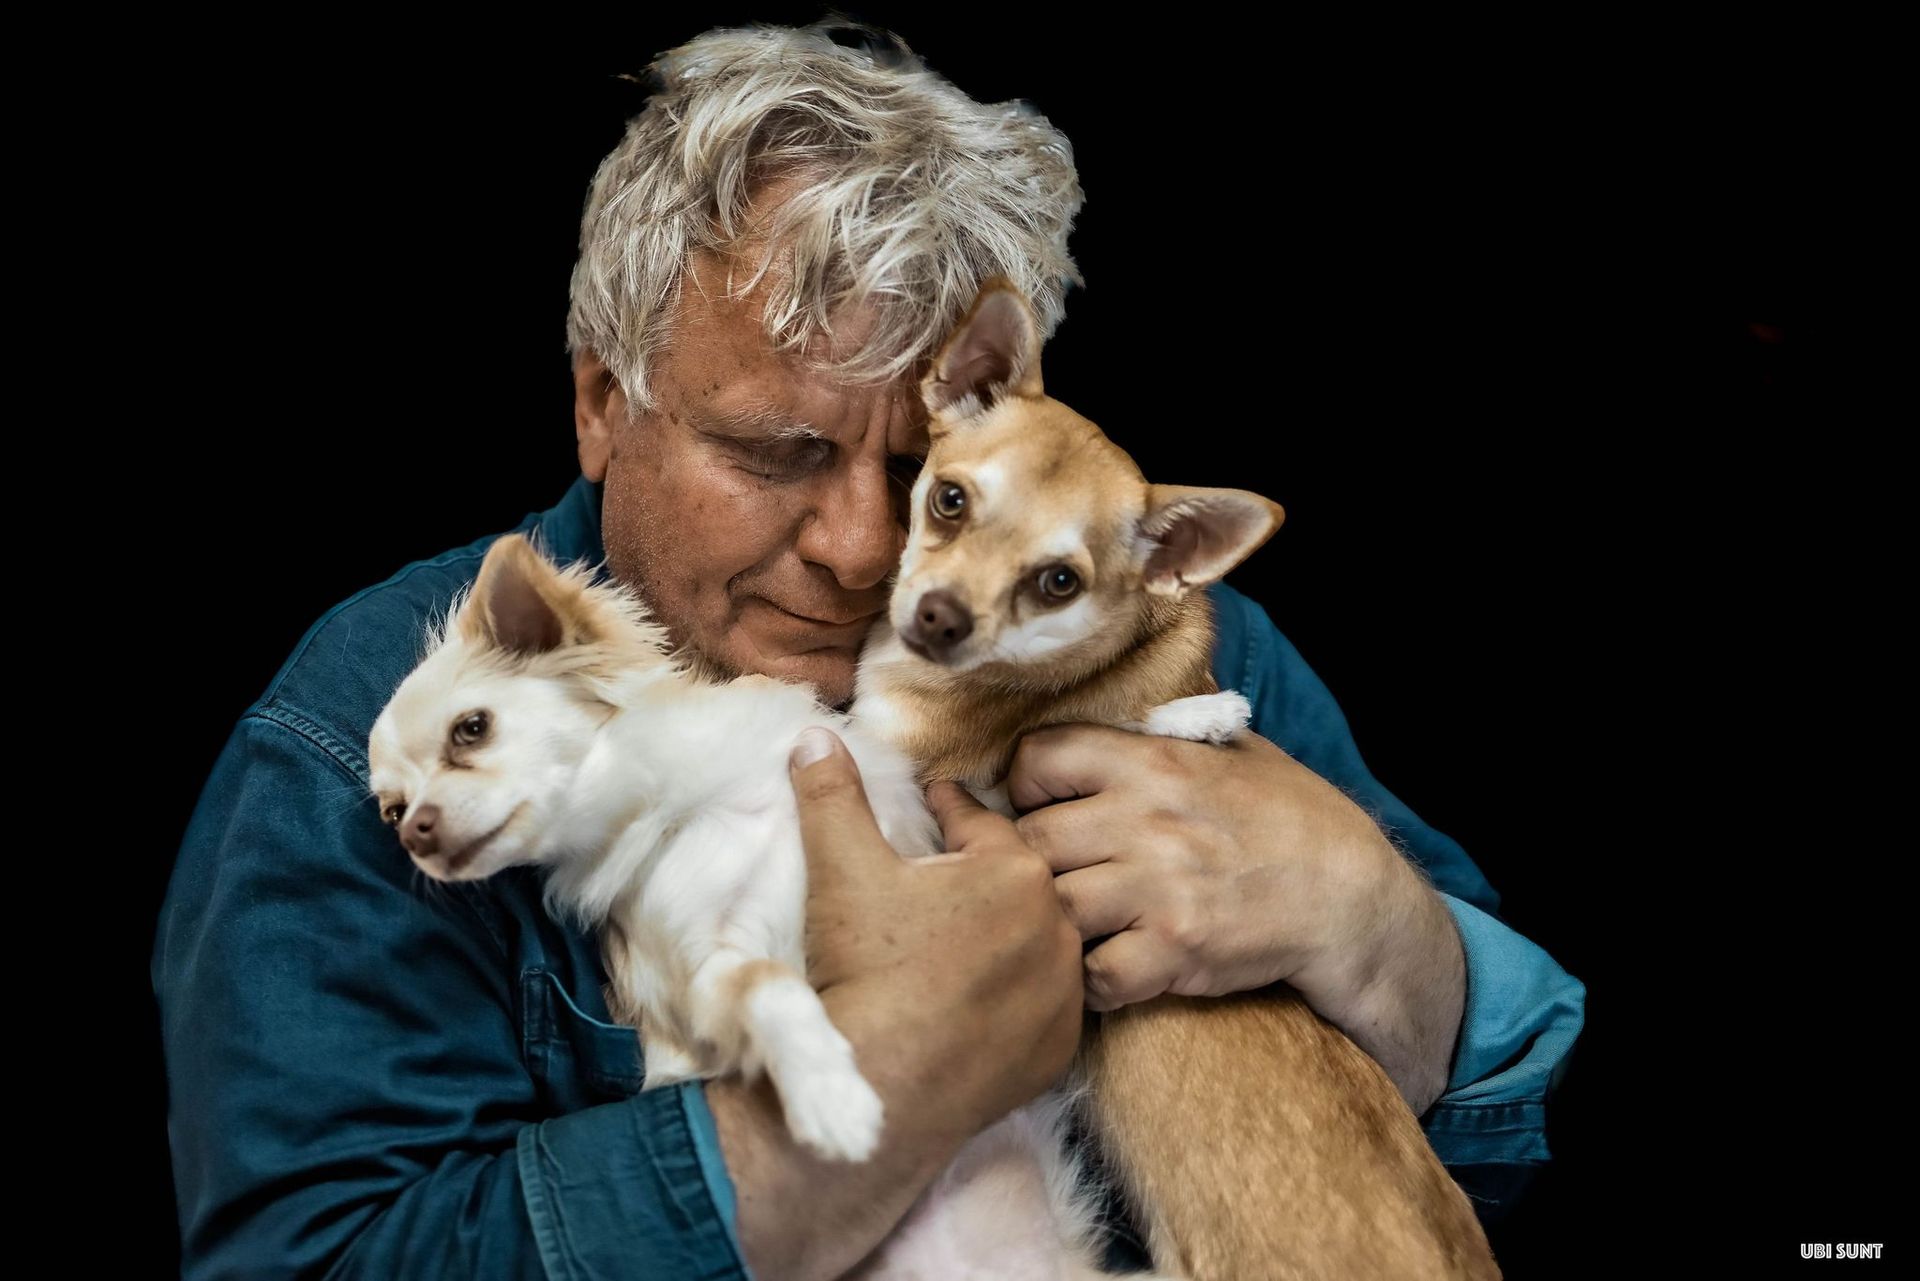 ο συγγραφέας Βρασίδας Καραλής κρατώντας αγκαλιά δύο σκυλιά